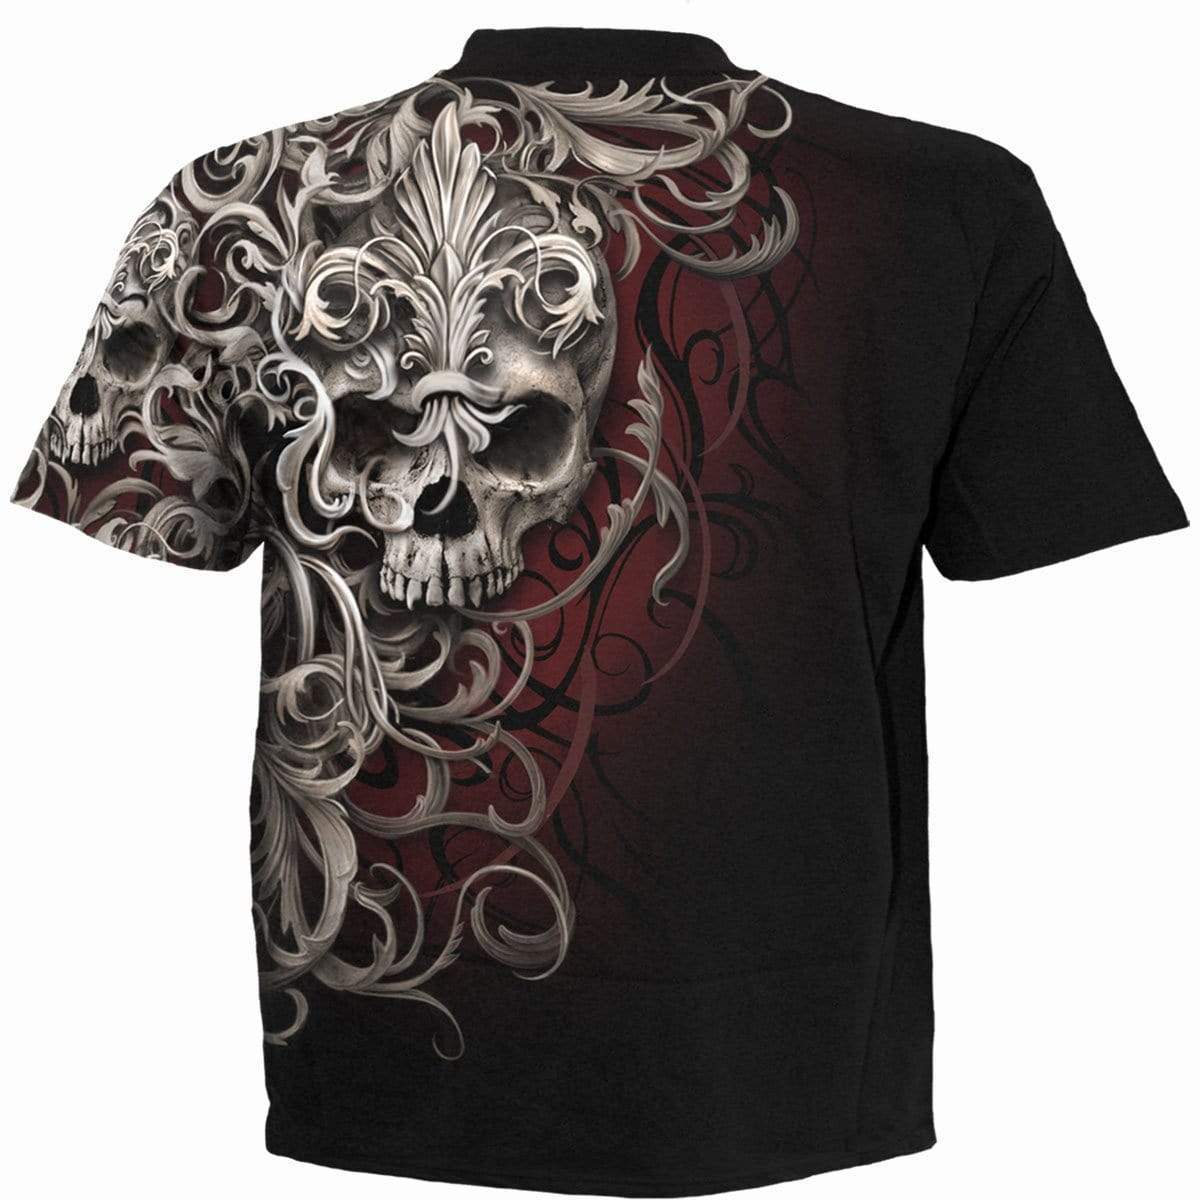 SKULL SHOULDER WRAP - Allover T-Shirt Black - Spiral USA